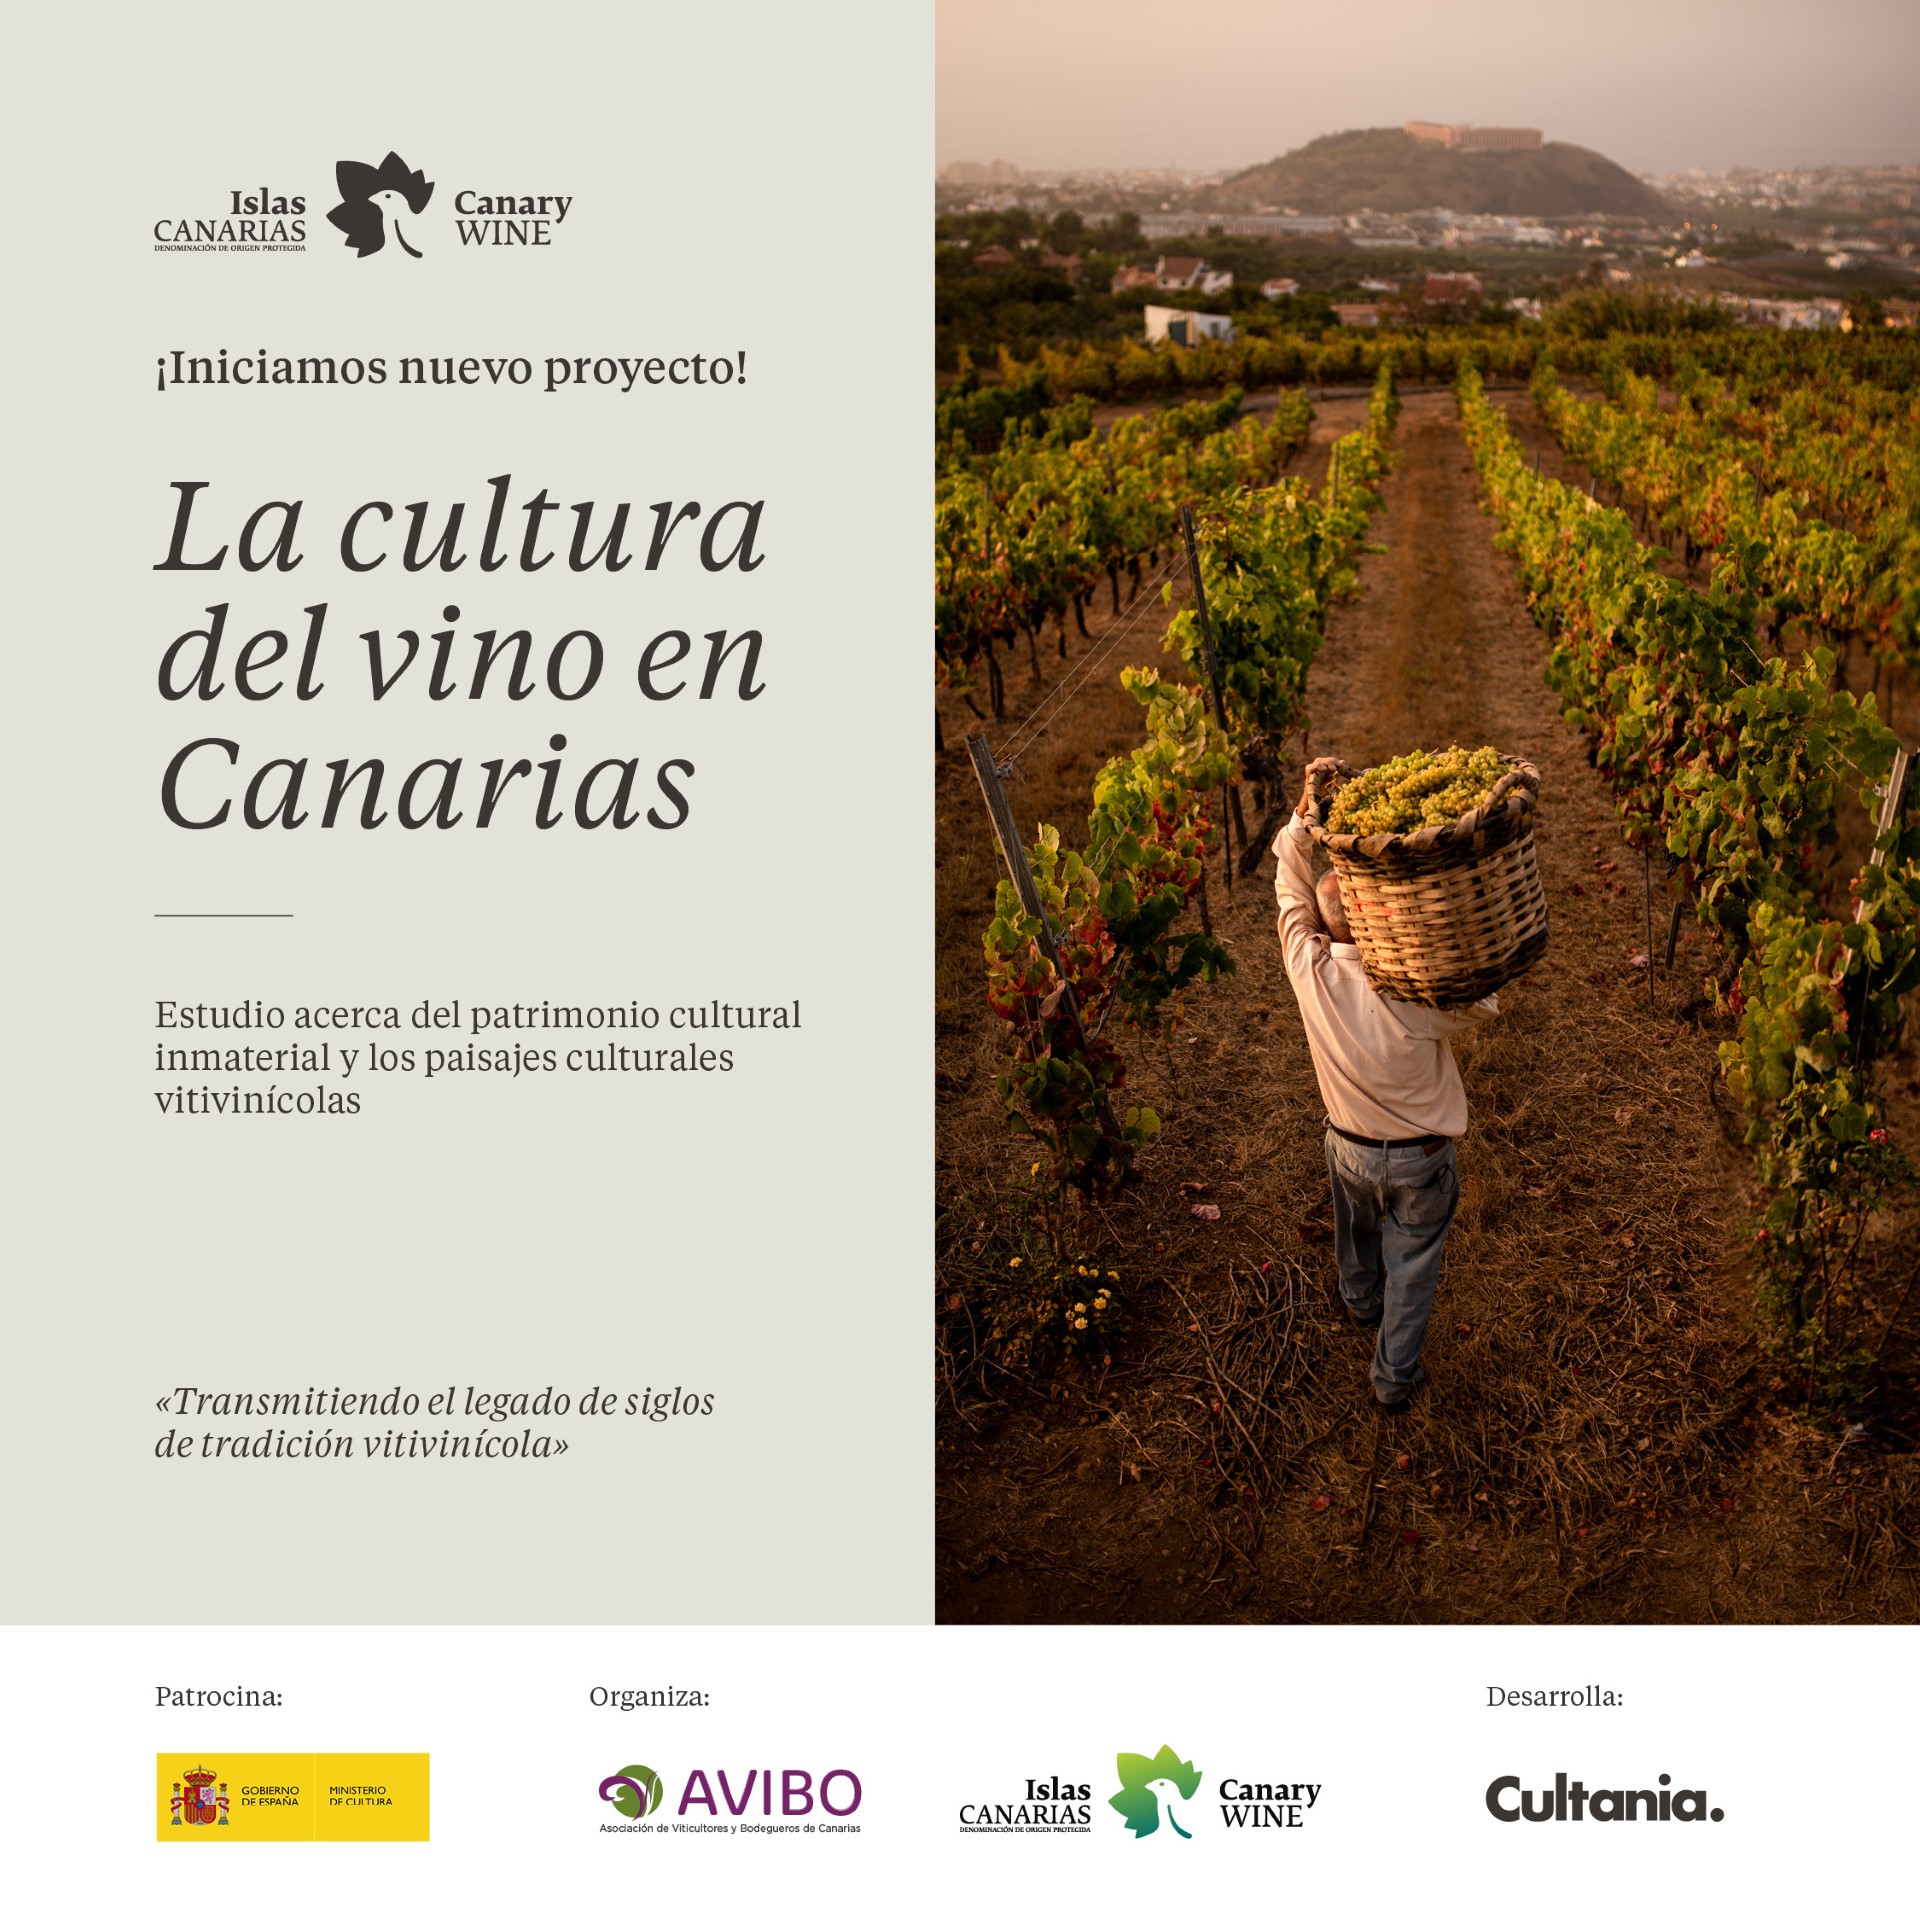 Viticultura/ canariasnoticias.es